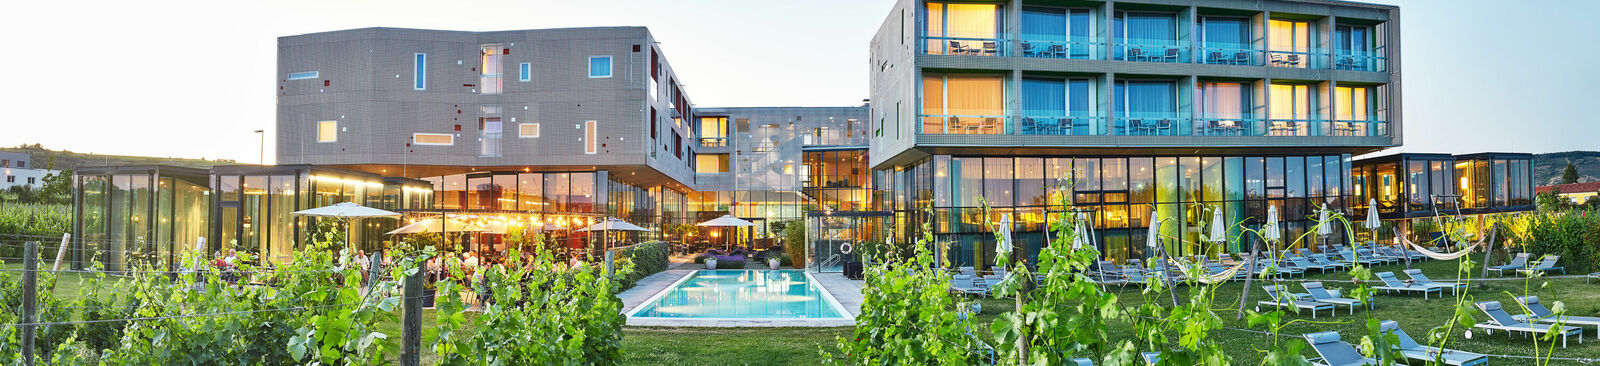 Im Kamptal in Niederösterreich, umgeben von Weingärten, sticht das Designhotel Loisium hervor.